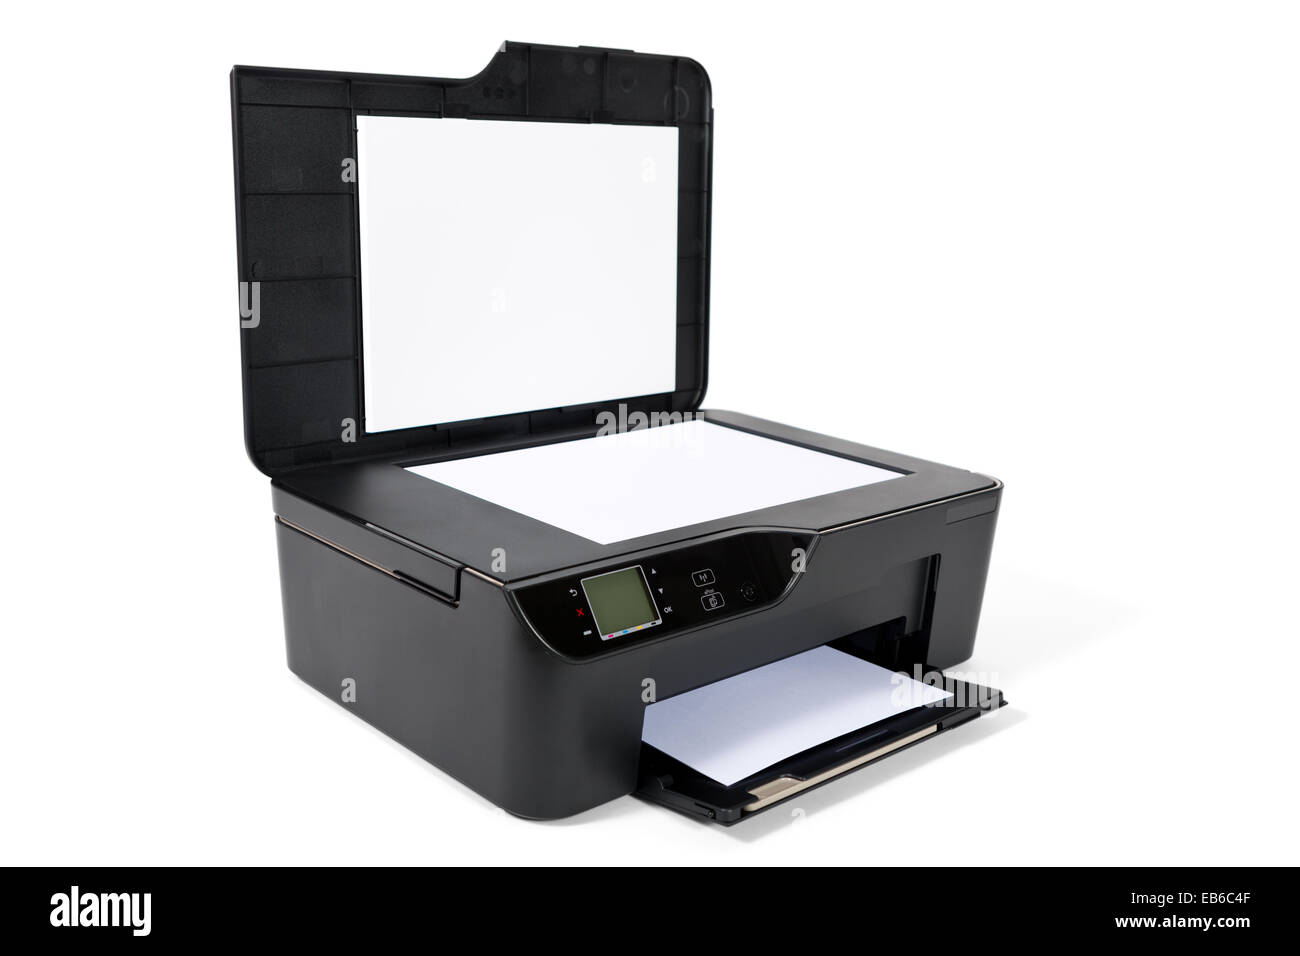 Drucker, Scanner, Kopierer, die isoliert auf weißem Hintergrund  Stockfotografie - Alamy